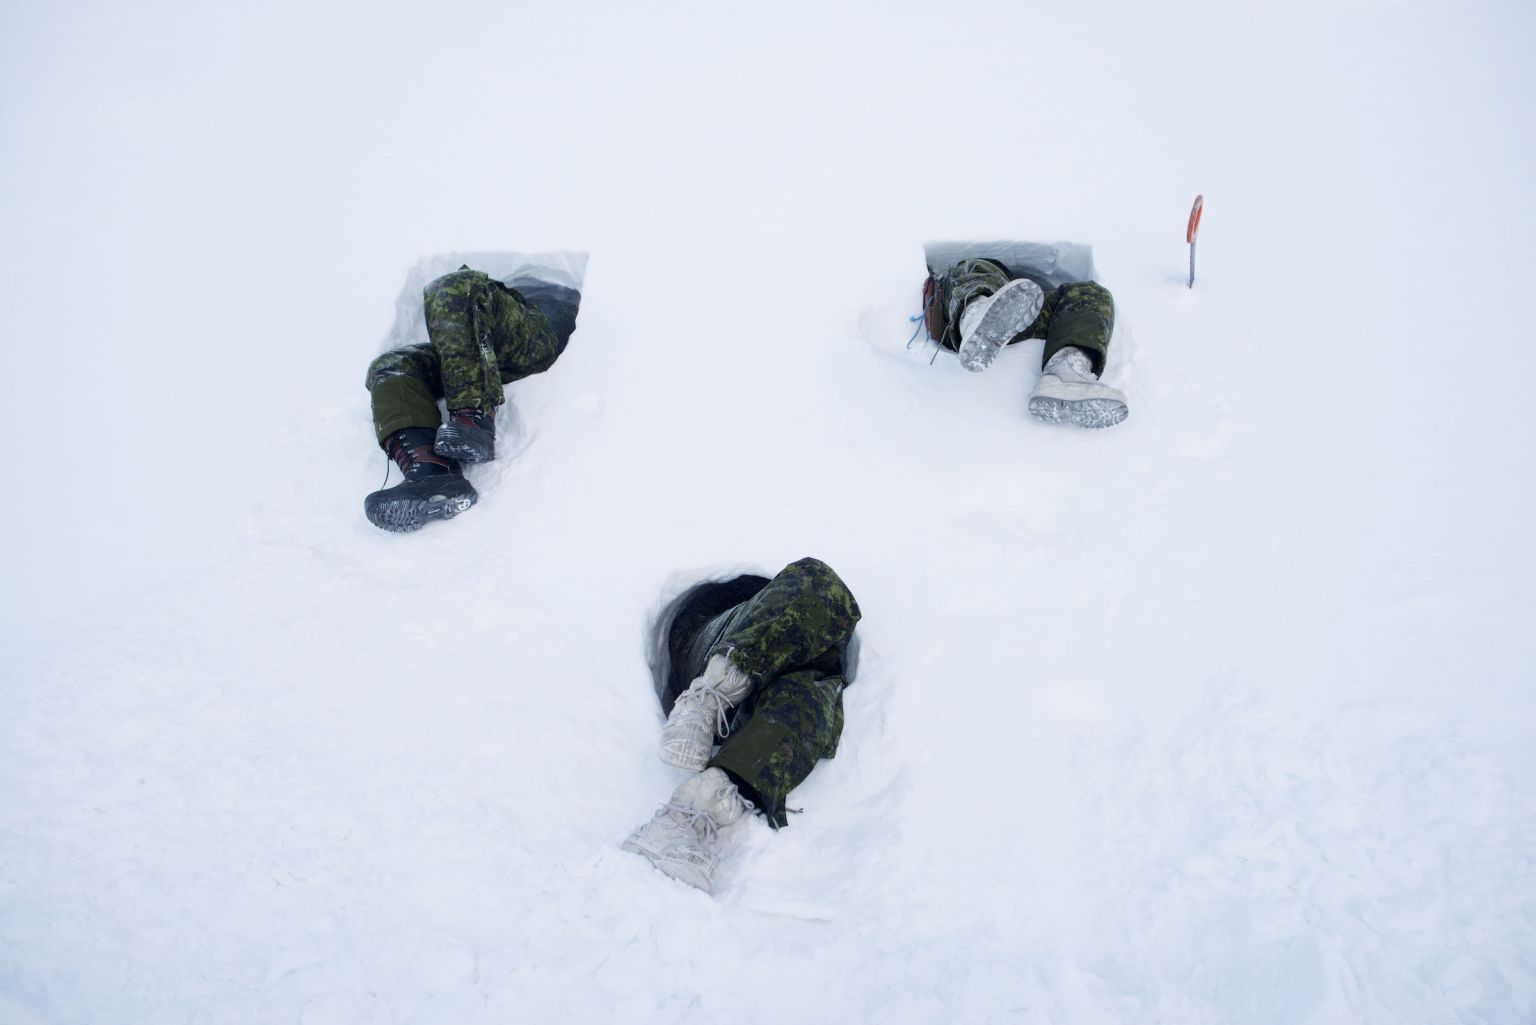 Des hommes creusent un tunnel dans le flanc d’une colline. Cet abri improvisé, appelé « grotte de neige », n’est chauffé que par une seule bougie. Les soldats envoyés dans le Grand Nord doivent apprendre à se repérer, manger, boire, dormir dans des températures extrêmes, allant de zéro l’été à -60 °C l’hiver.